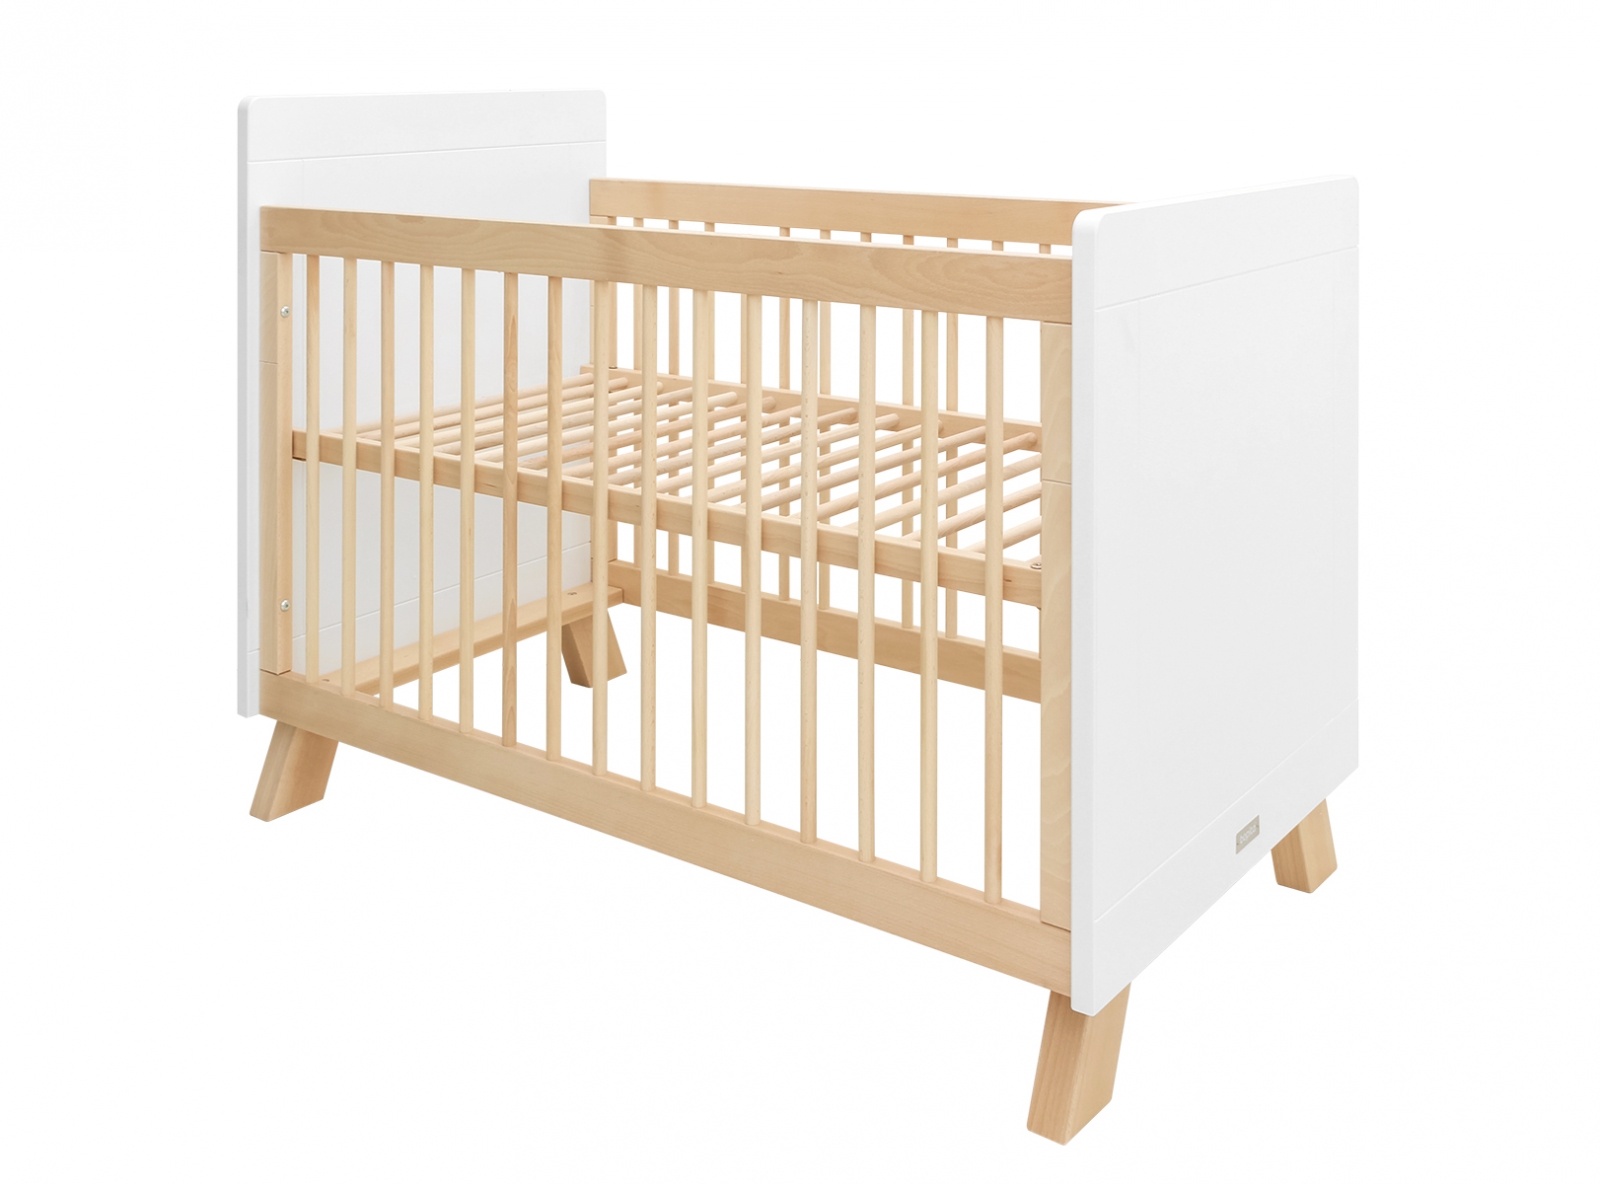 Varken Voorschrijven Regelen Order the Bopita Lisa Bed - 60x120 cm. online - Baby Plus